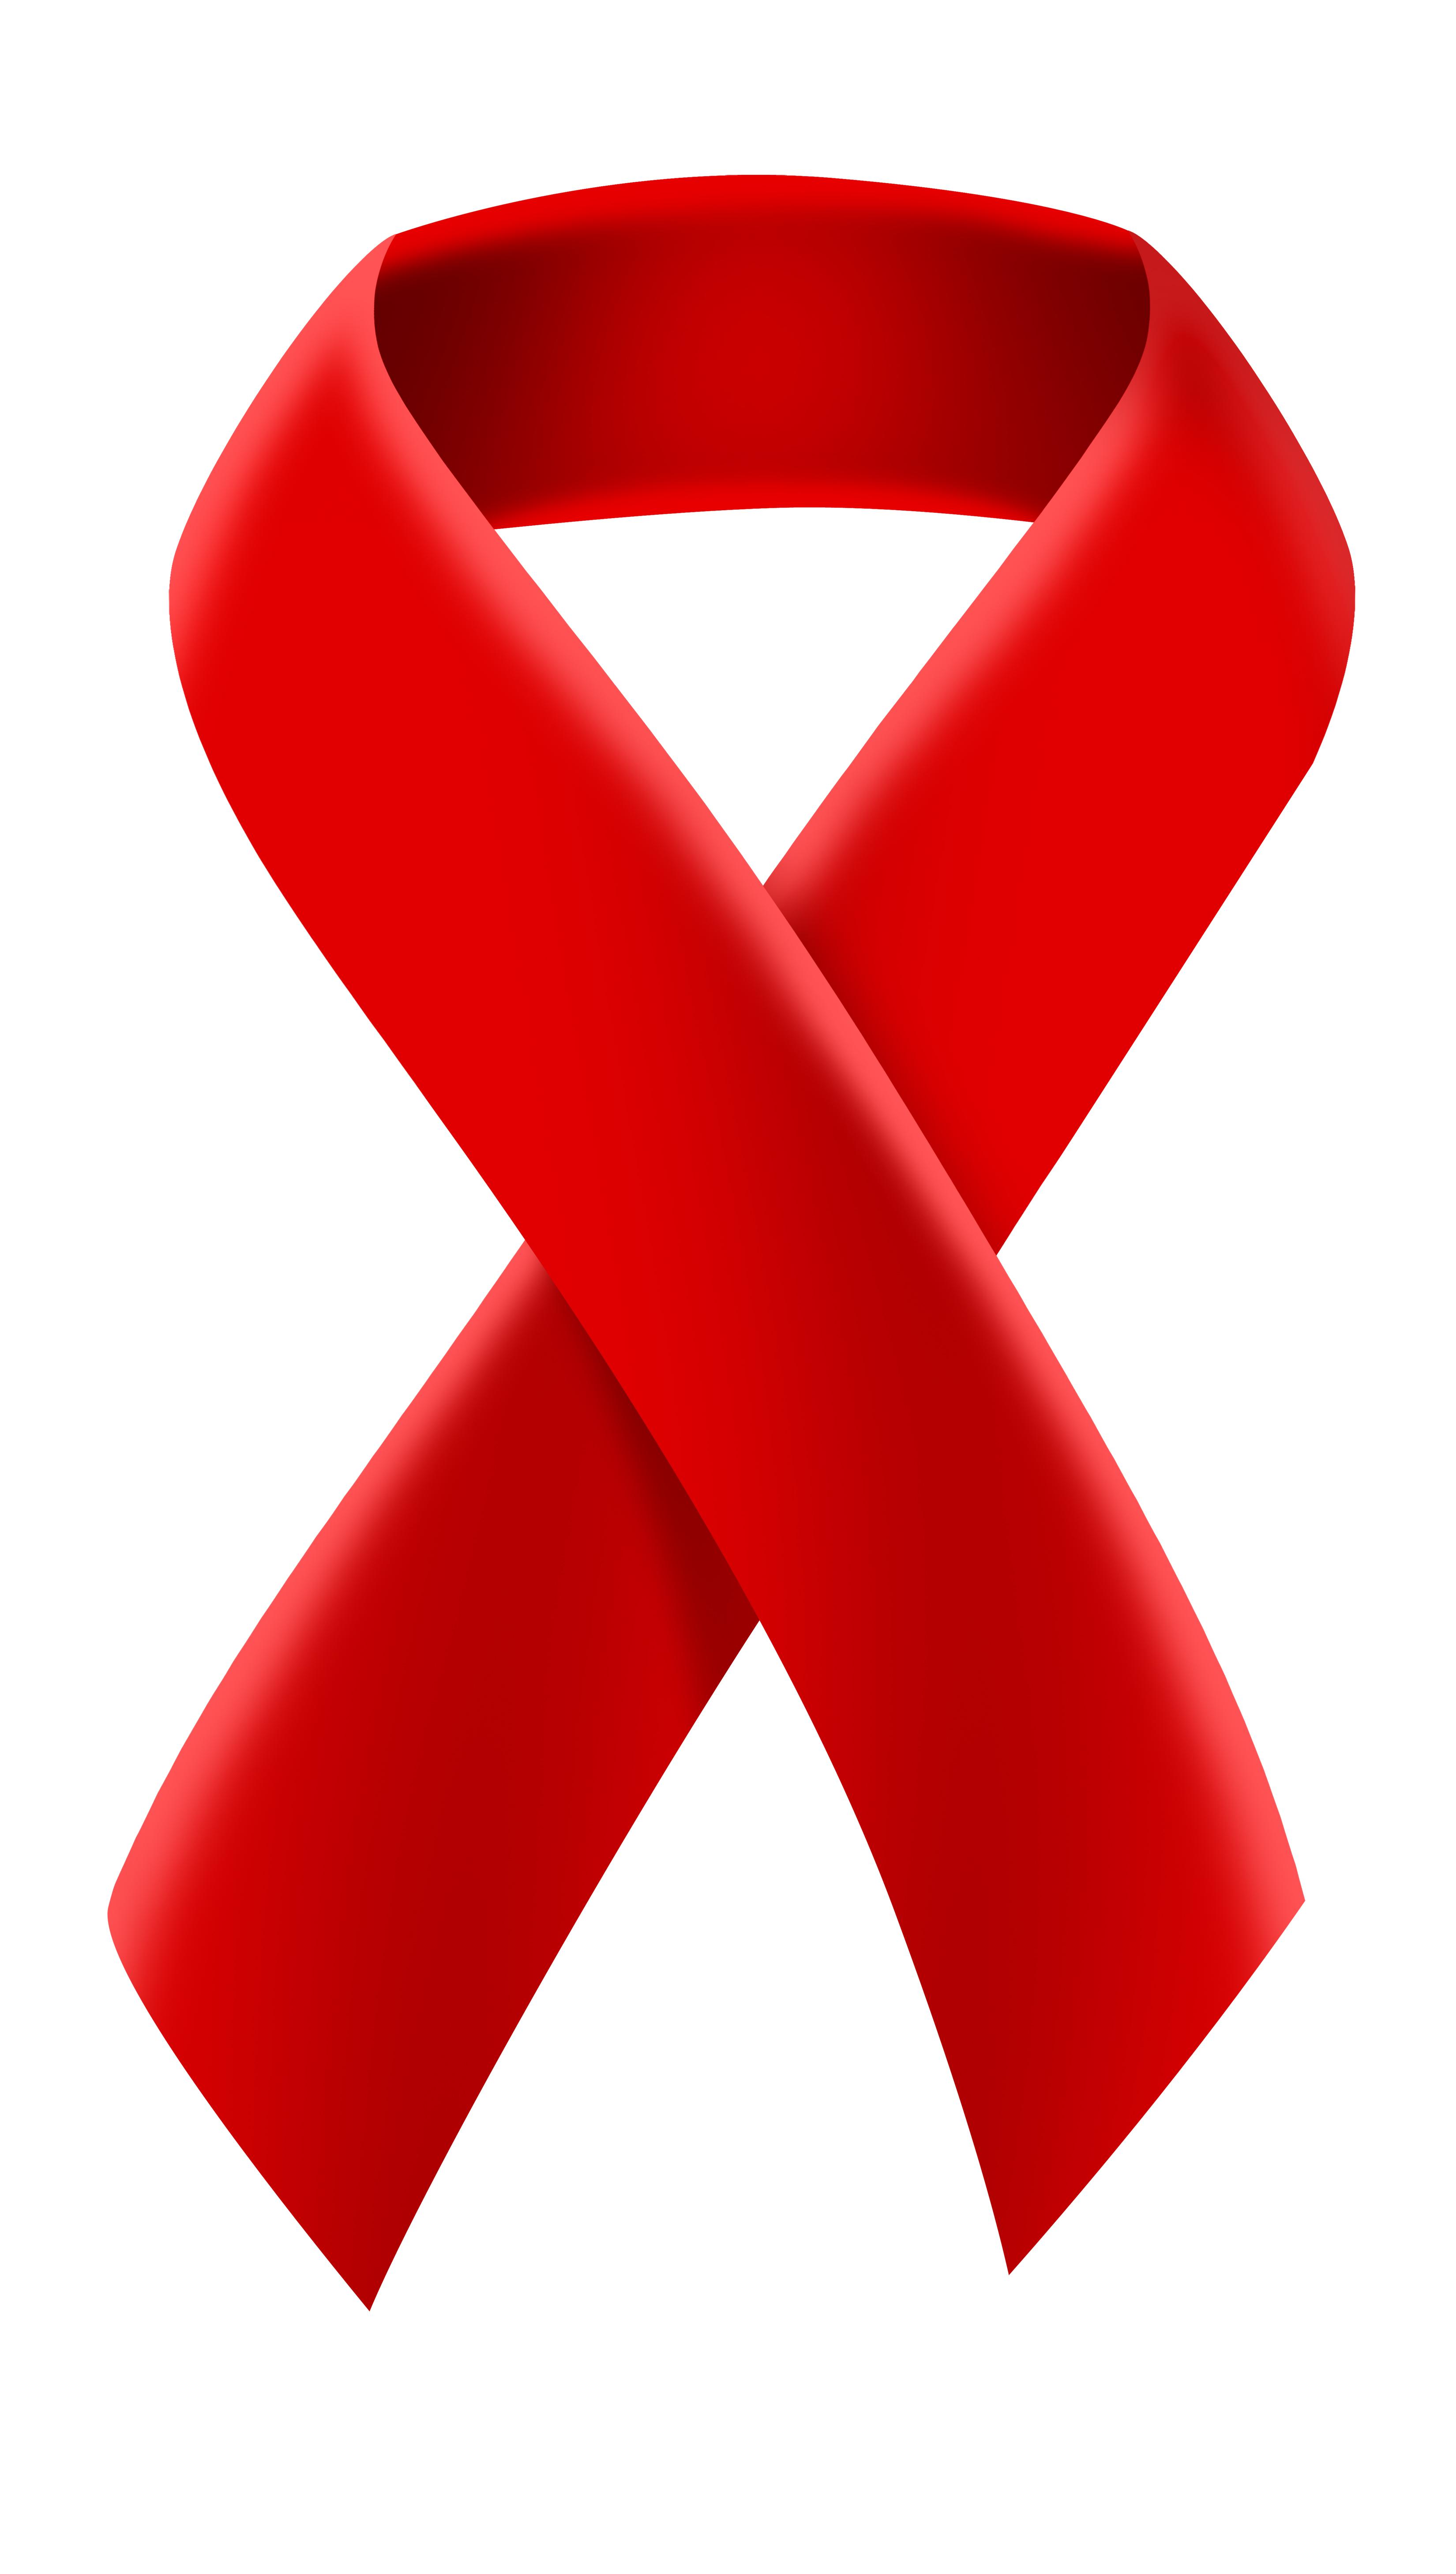 Close-up of AIDS awareness ribbon